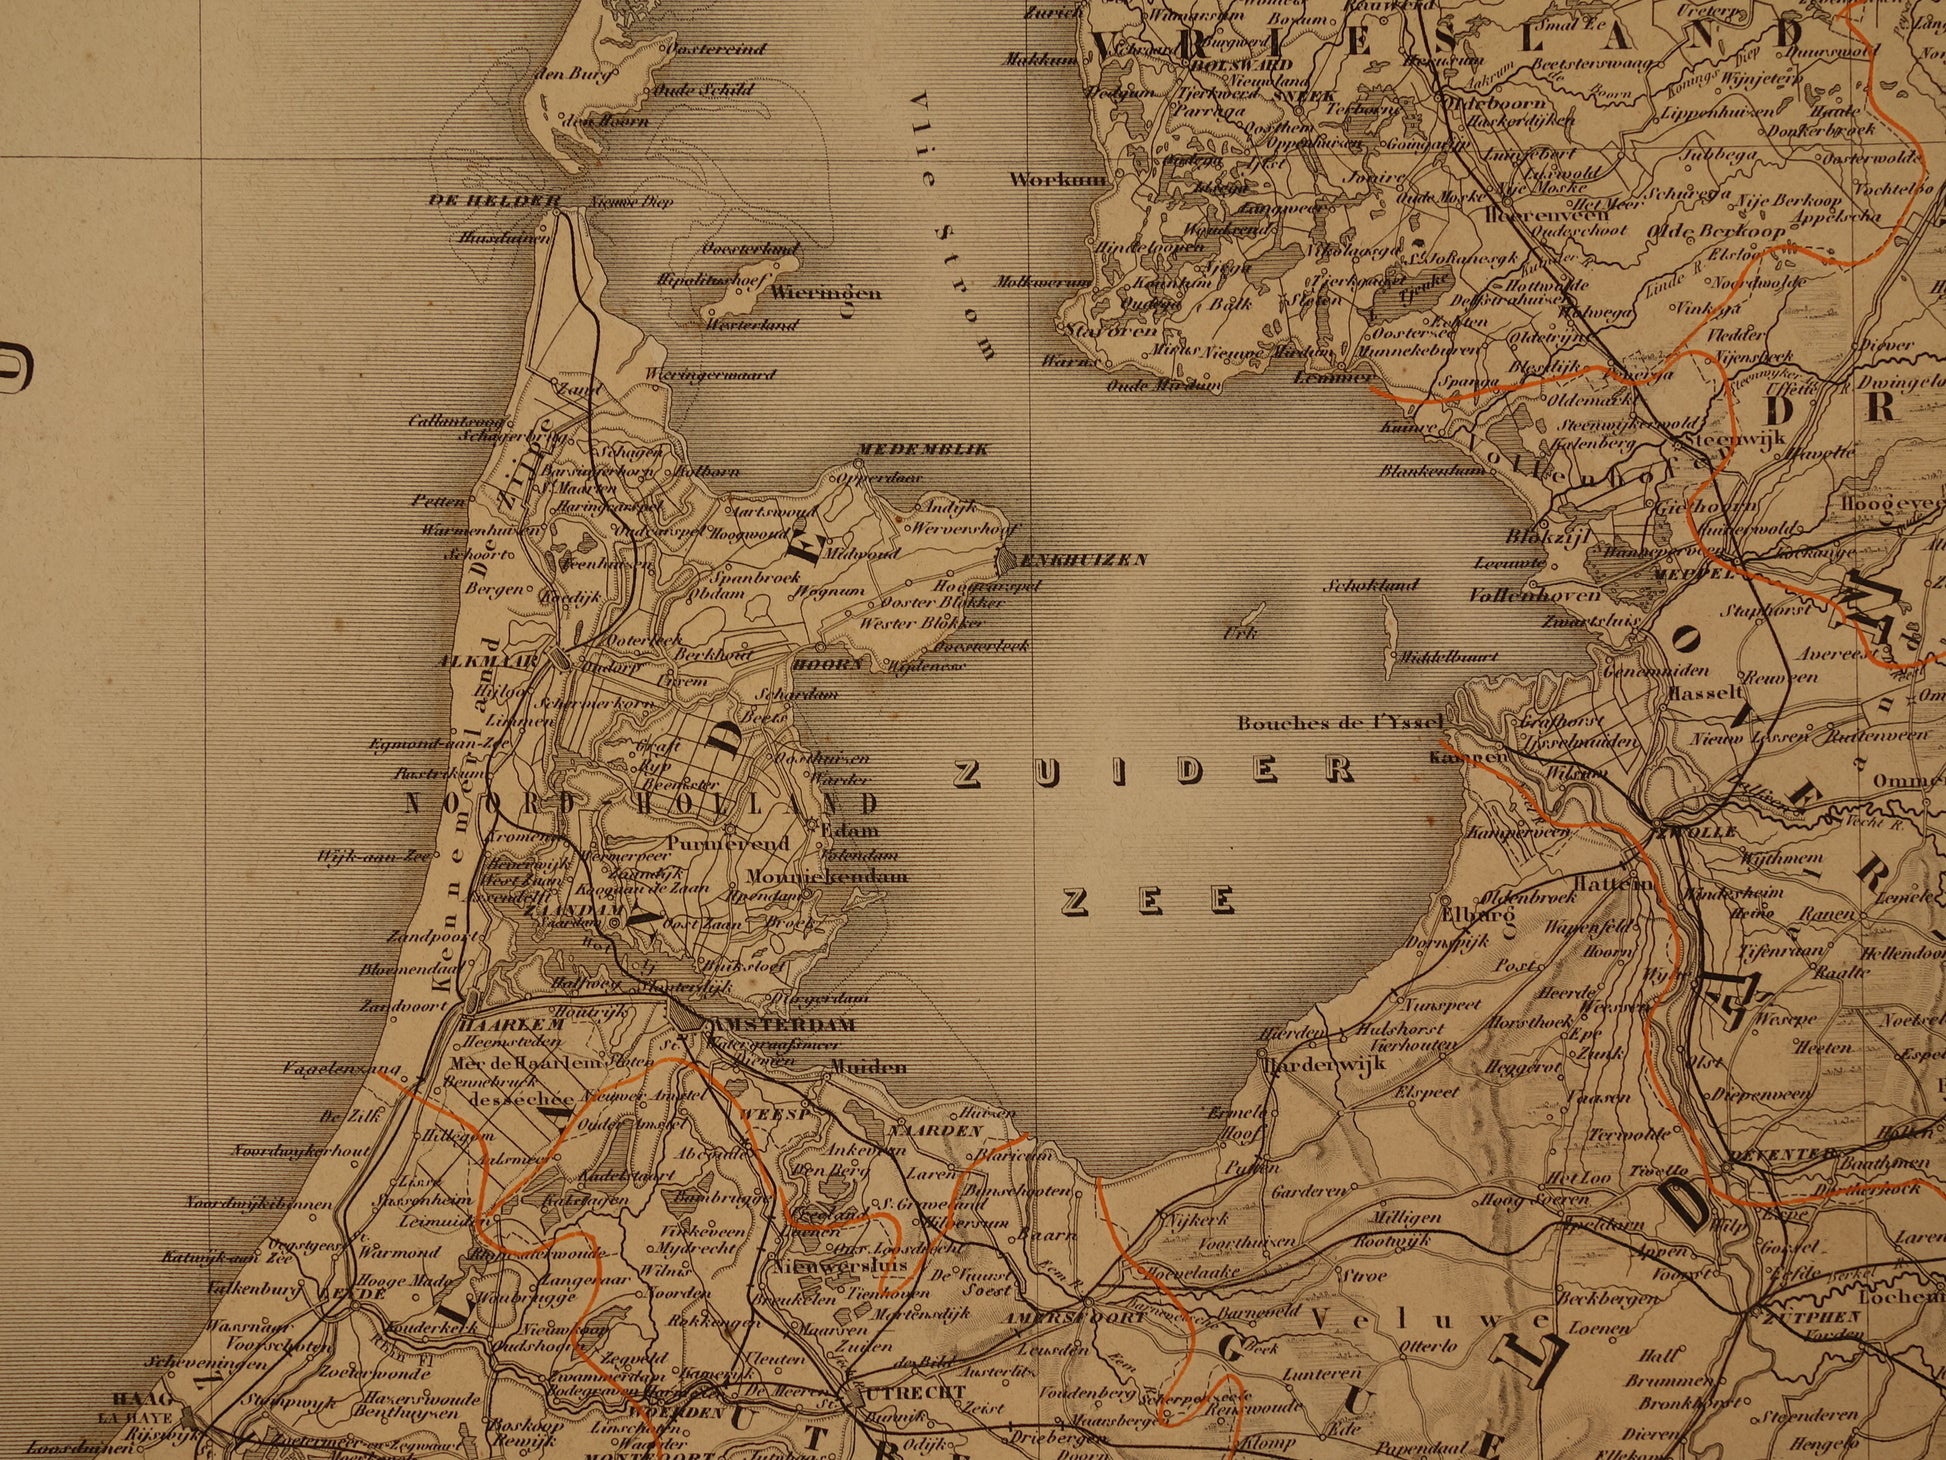 Grote landkaart van Nederland en België originele – Oudekaarten.com